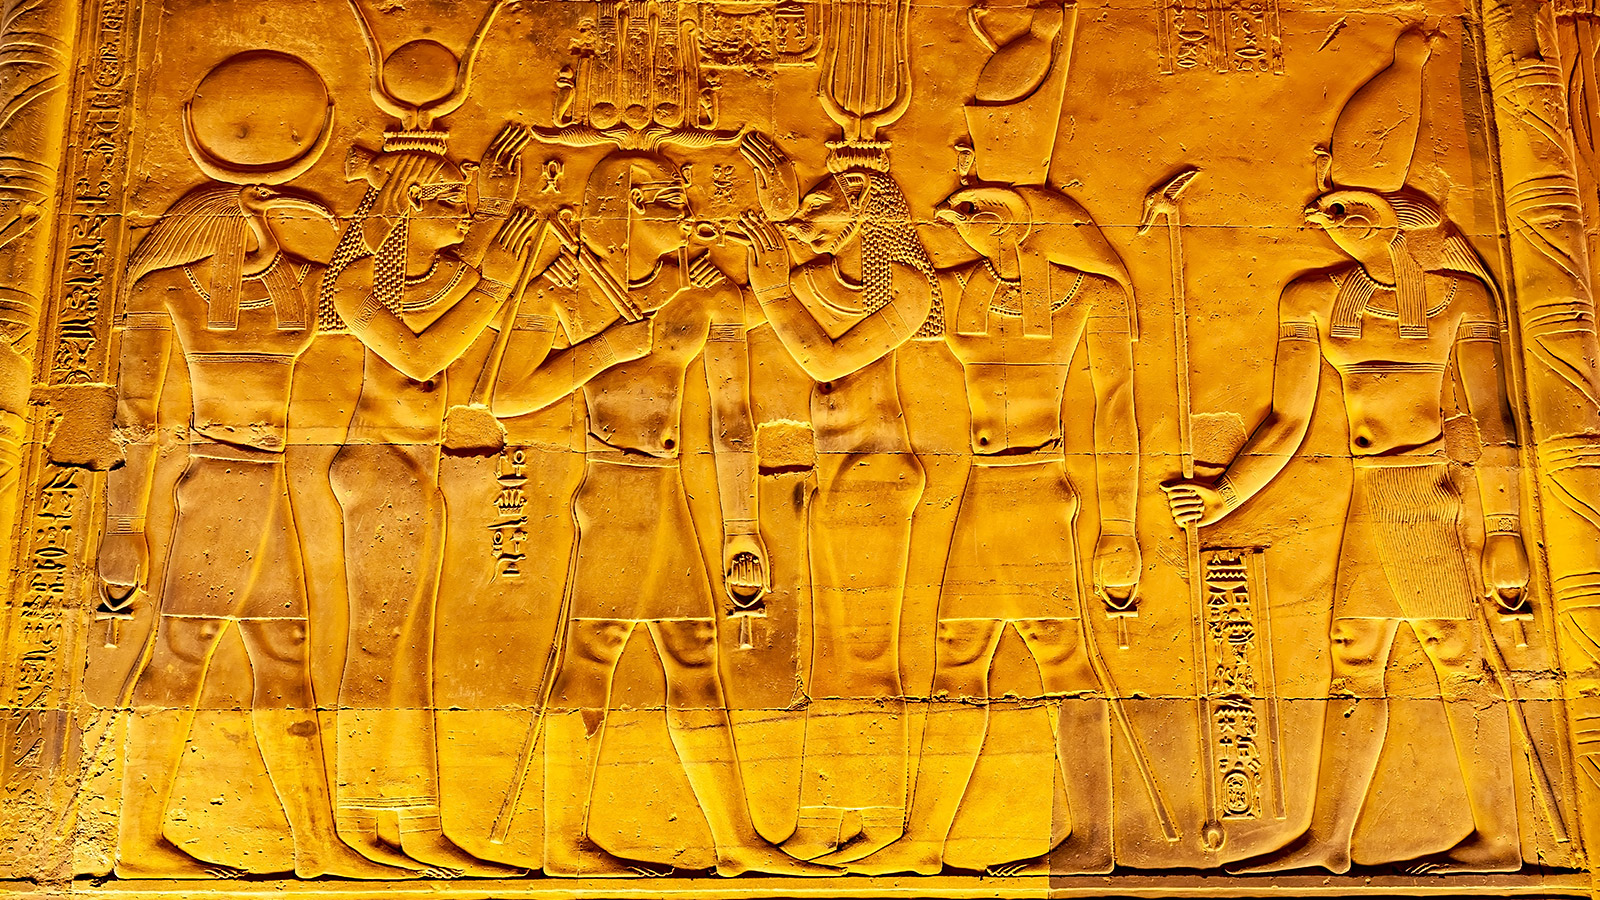 De tempel van Kom Ombo is gewijd aan de valkengod Horus en de krokodillengod Sobek